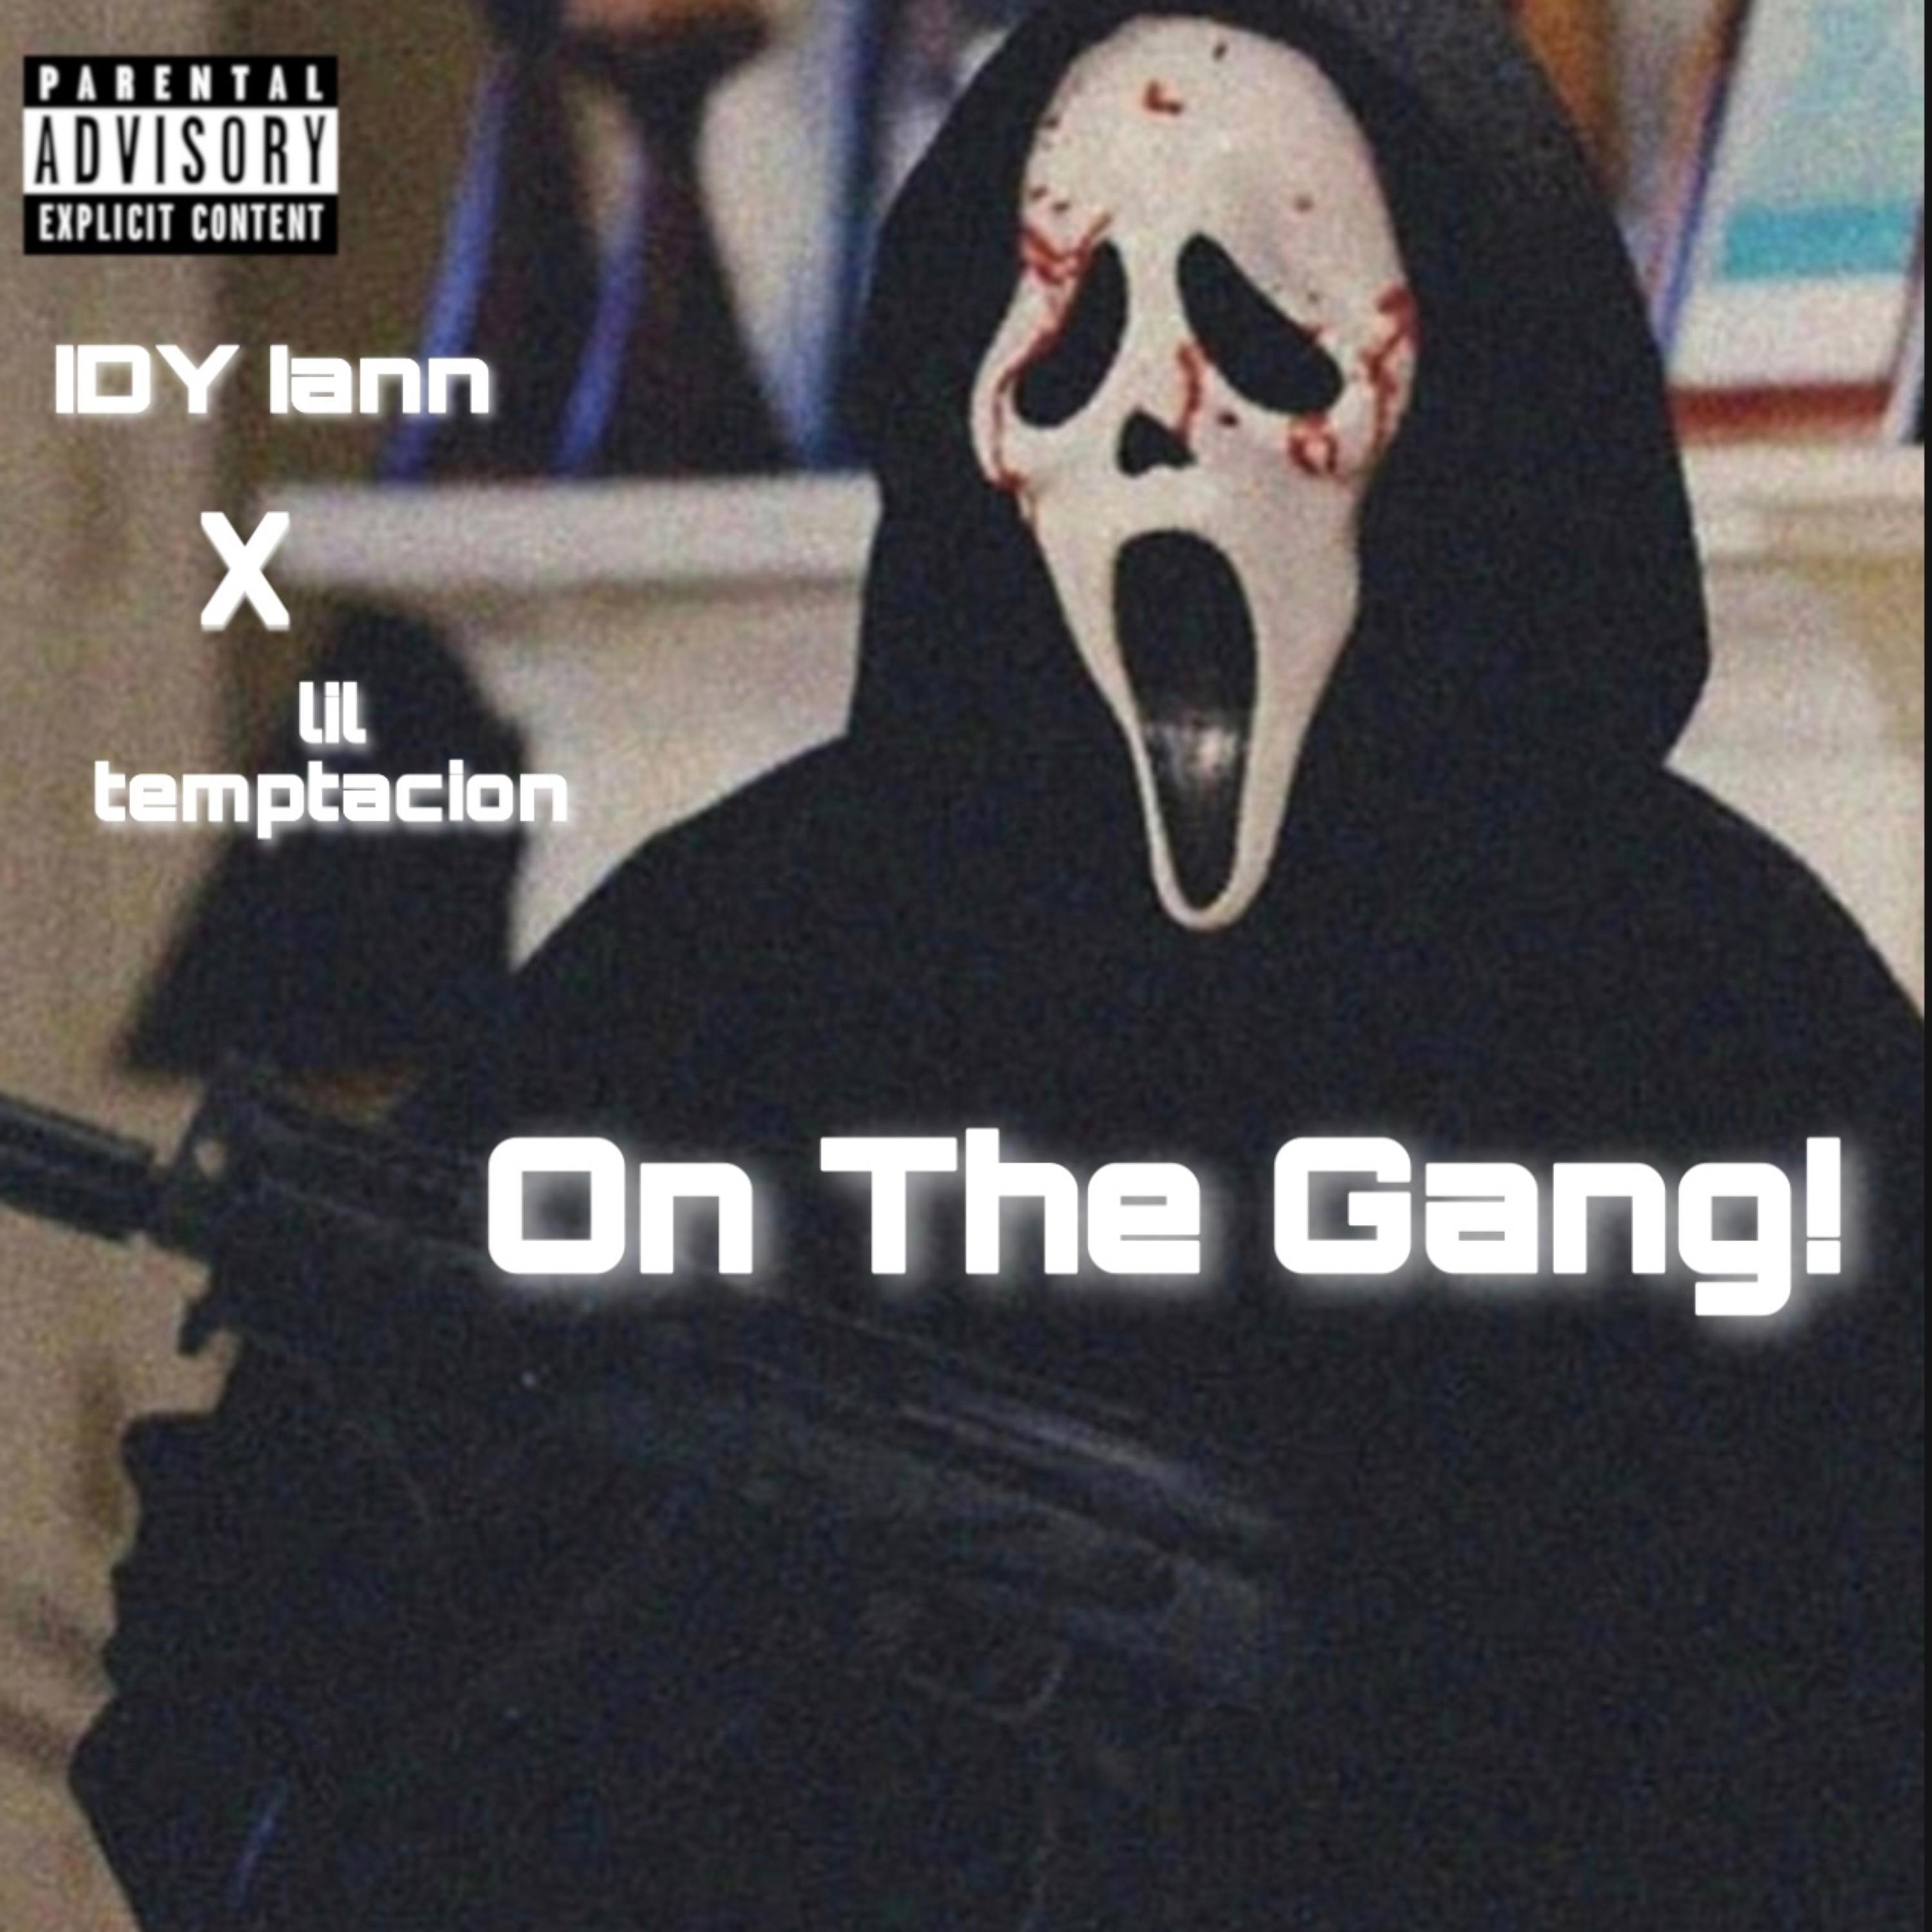 IDY Iann - On The Gang!